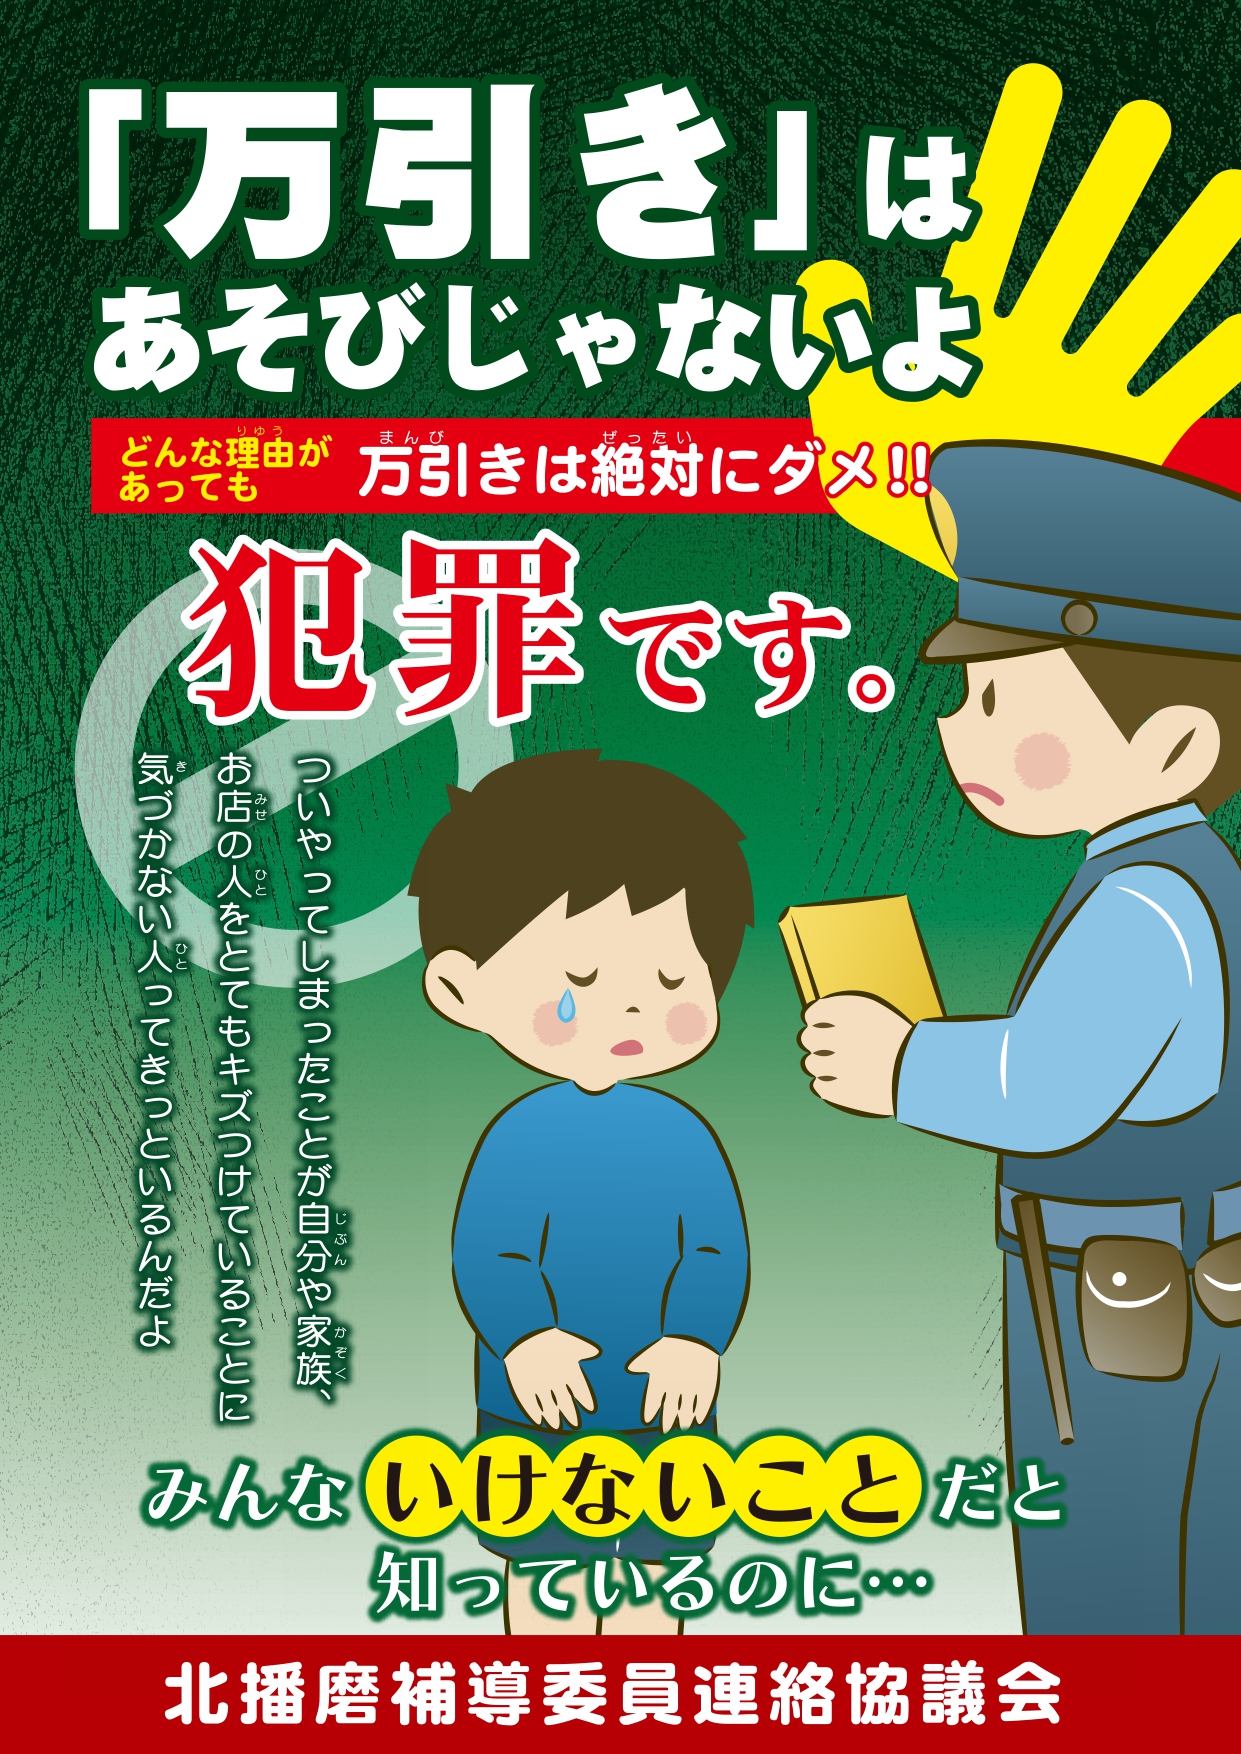 万引きは遊びじゃないよと書かれた啓発ポスター。警察が子供を叱っているイラストが載っている。